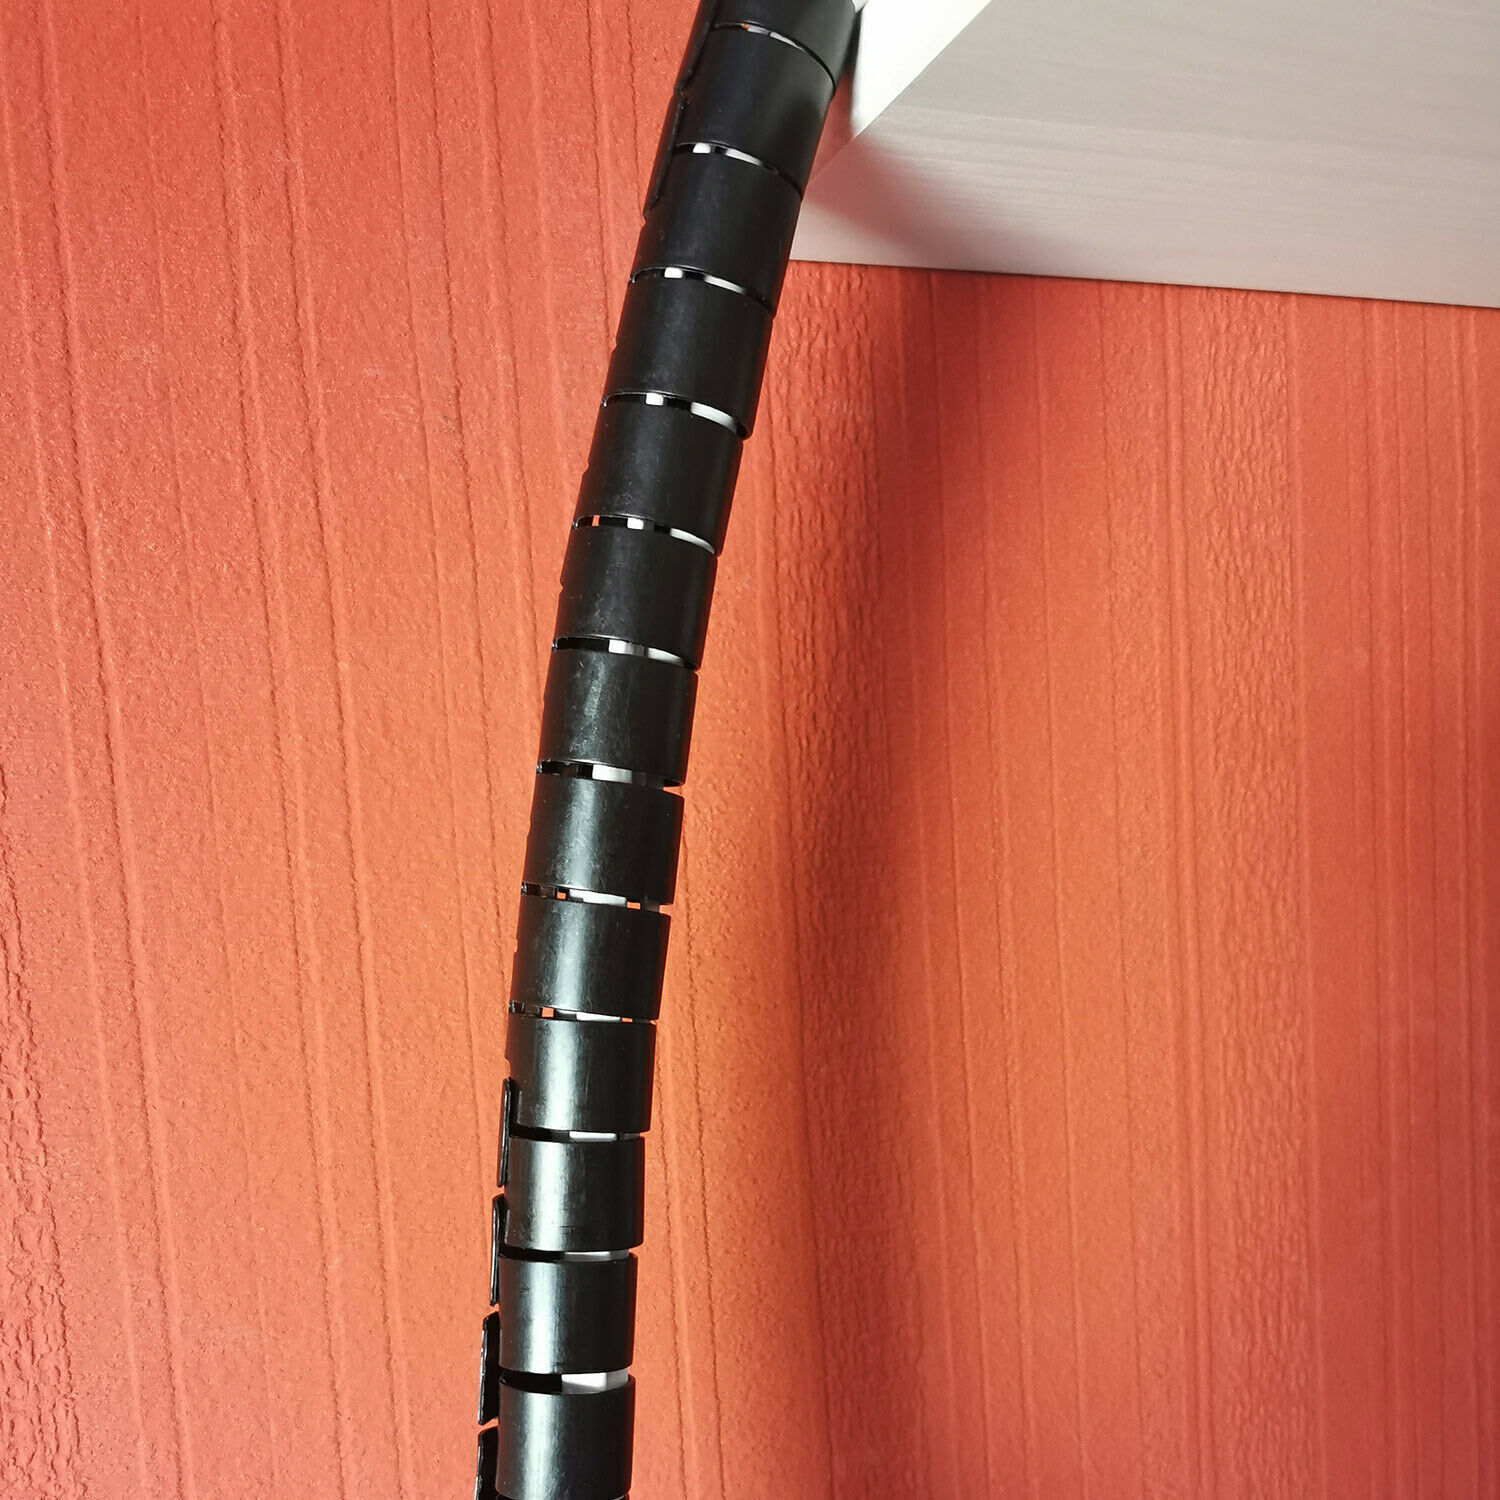 3 Meter (Dm. 16 mm) Flexible Kabelführung Kabel Schlauch Spirale Spiralschlauch Grau